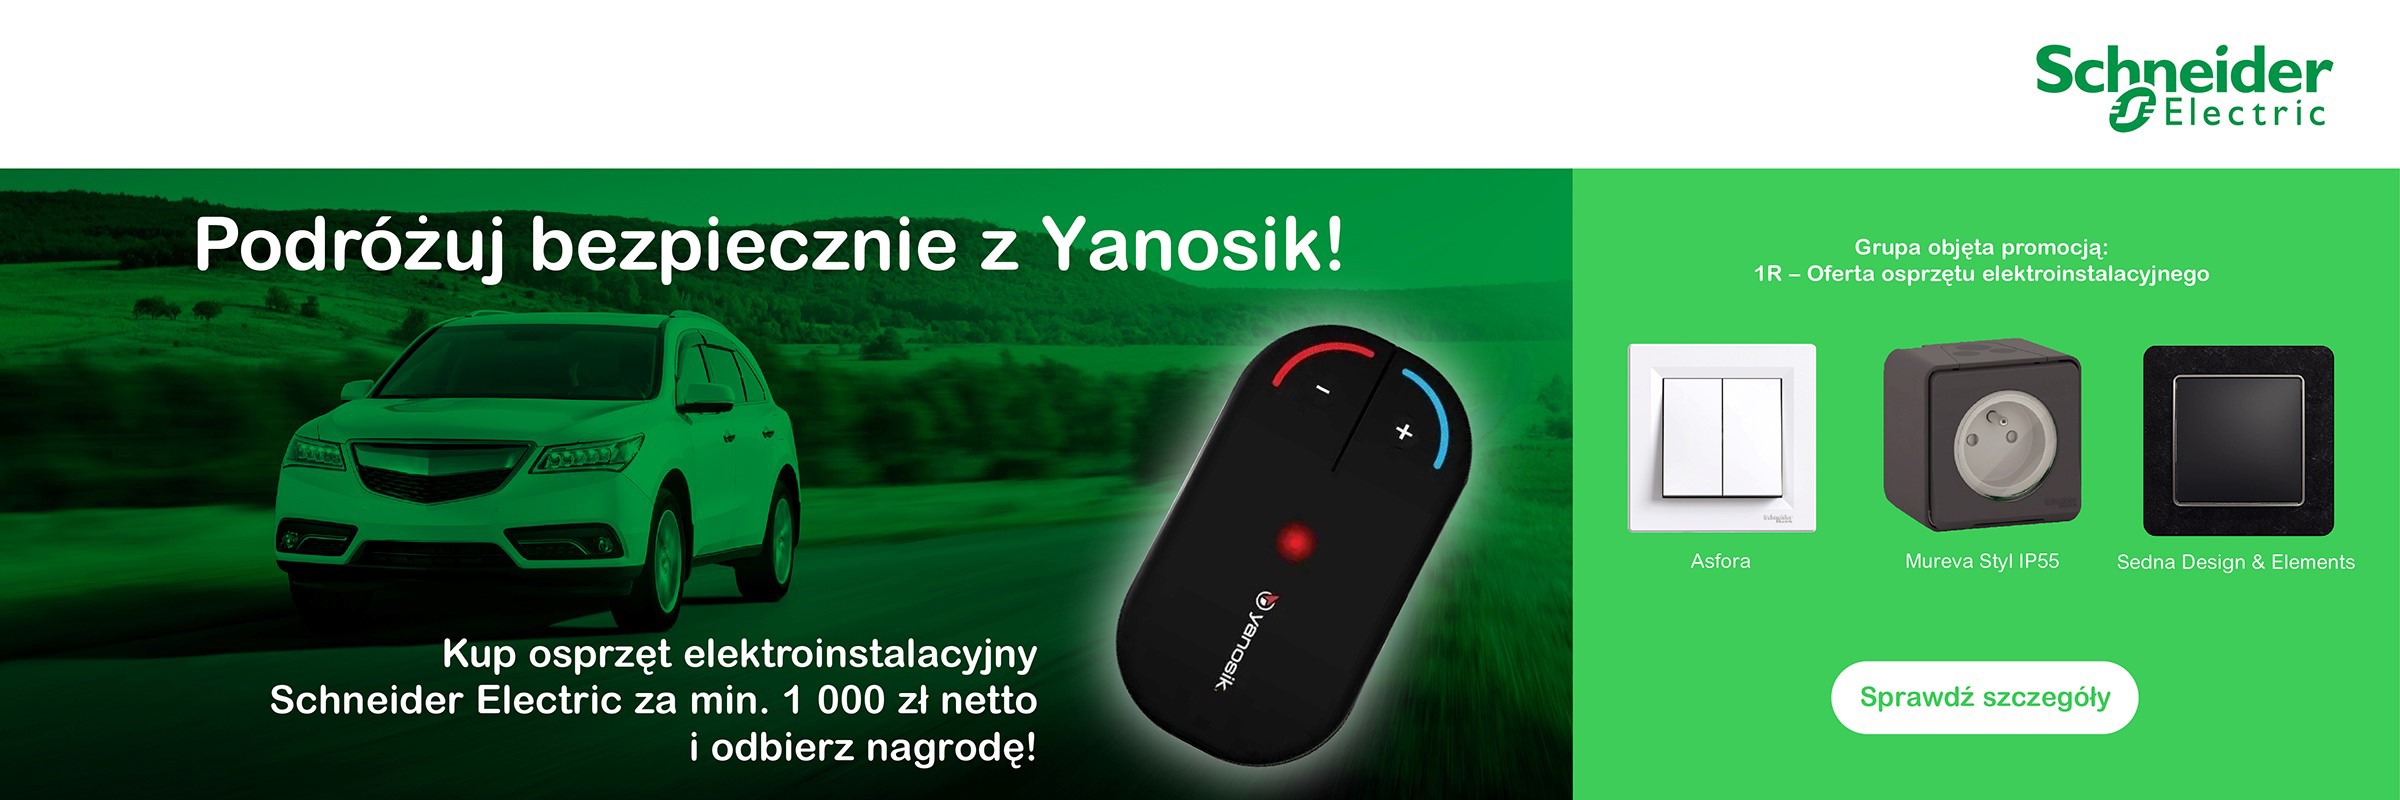 Promocja Yanosik